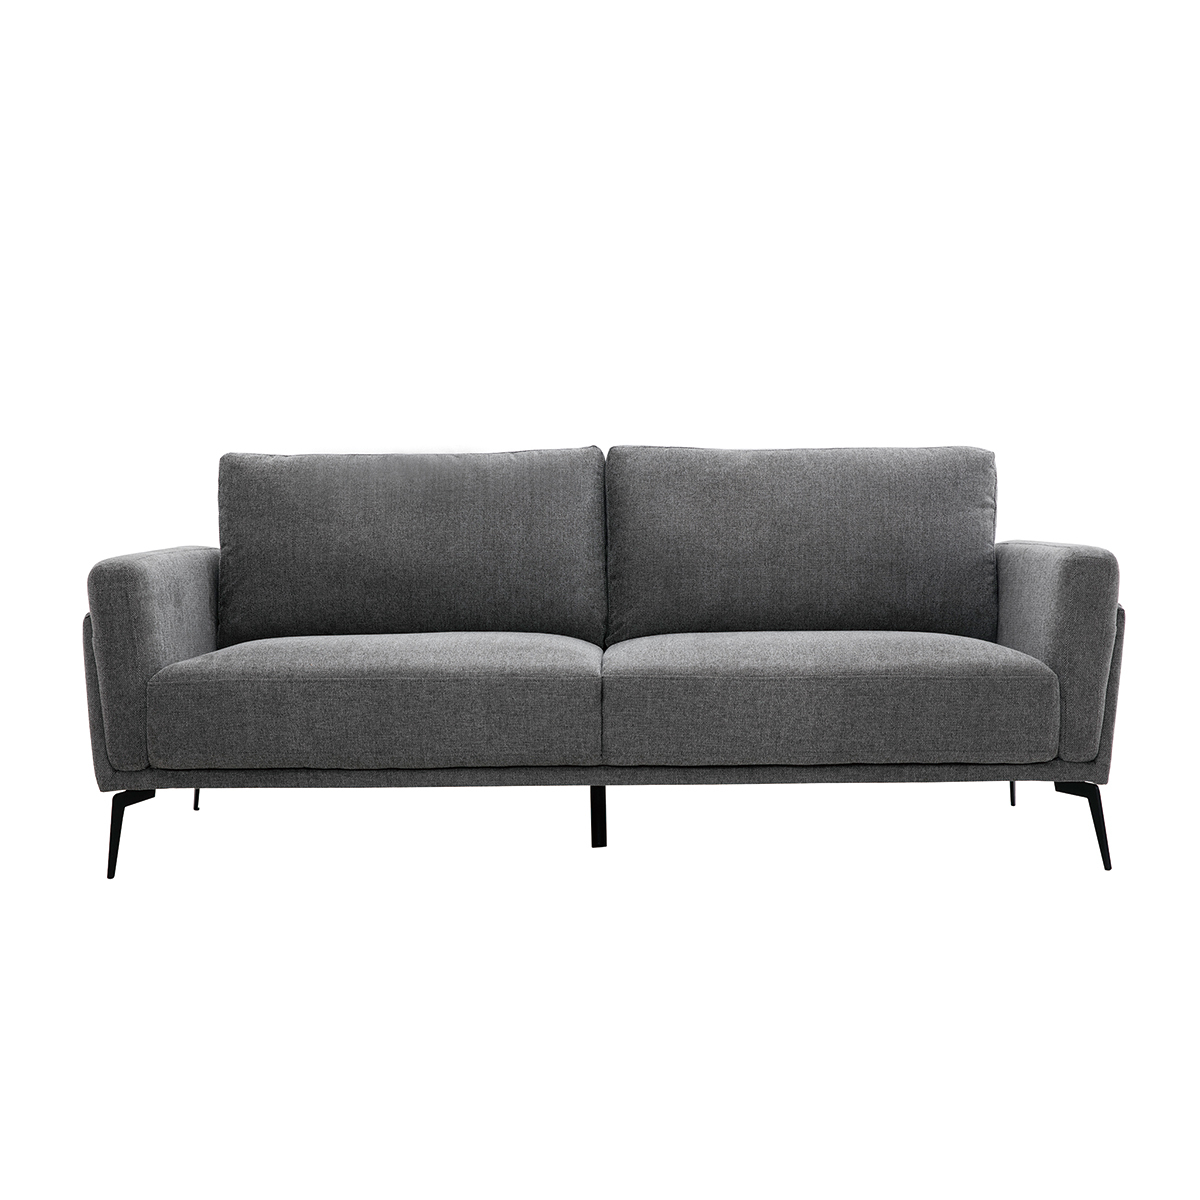 Canapé design 3 places en tissu effet velours texturé gris et métal noir MOSCO vue1